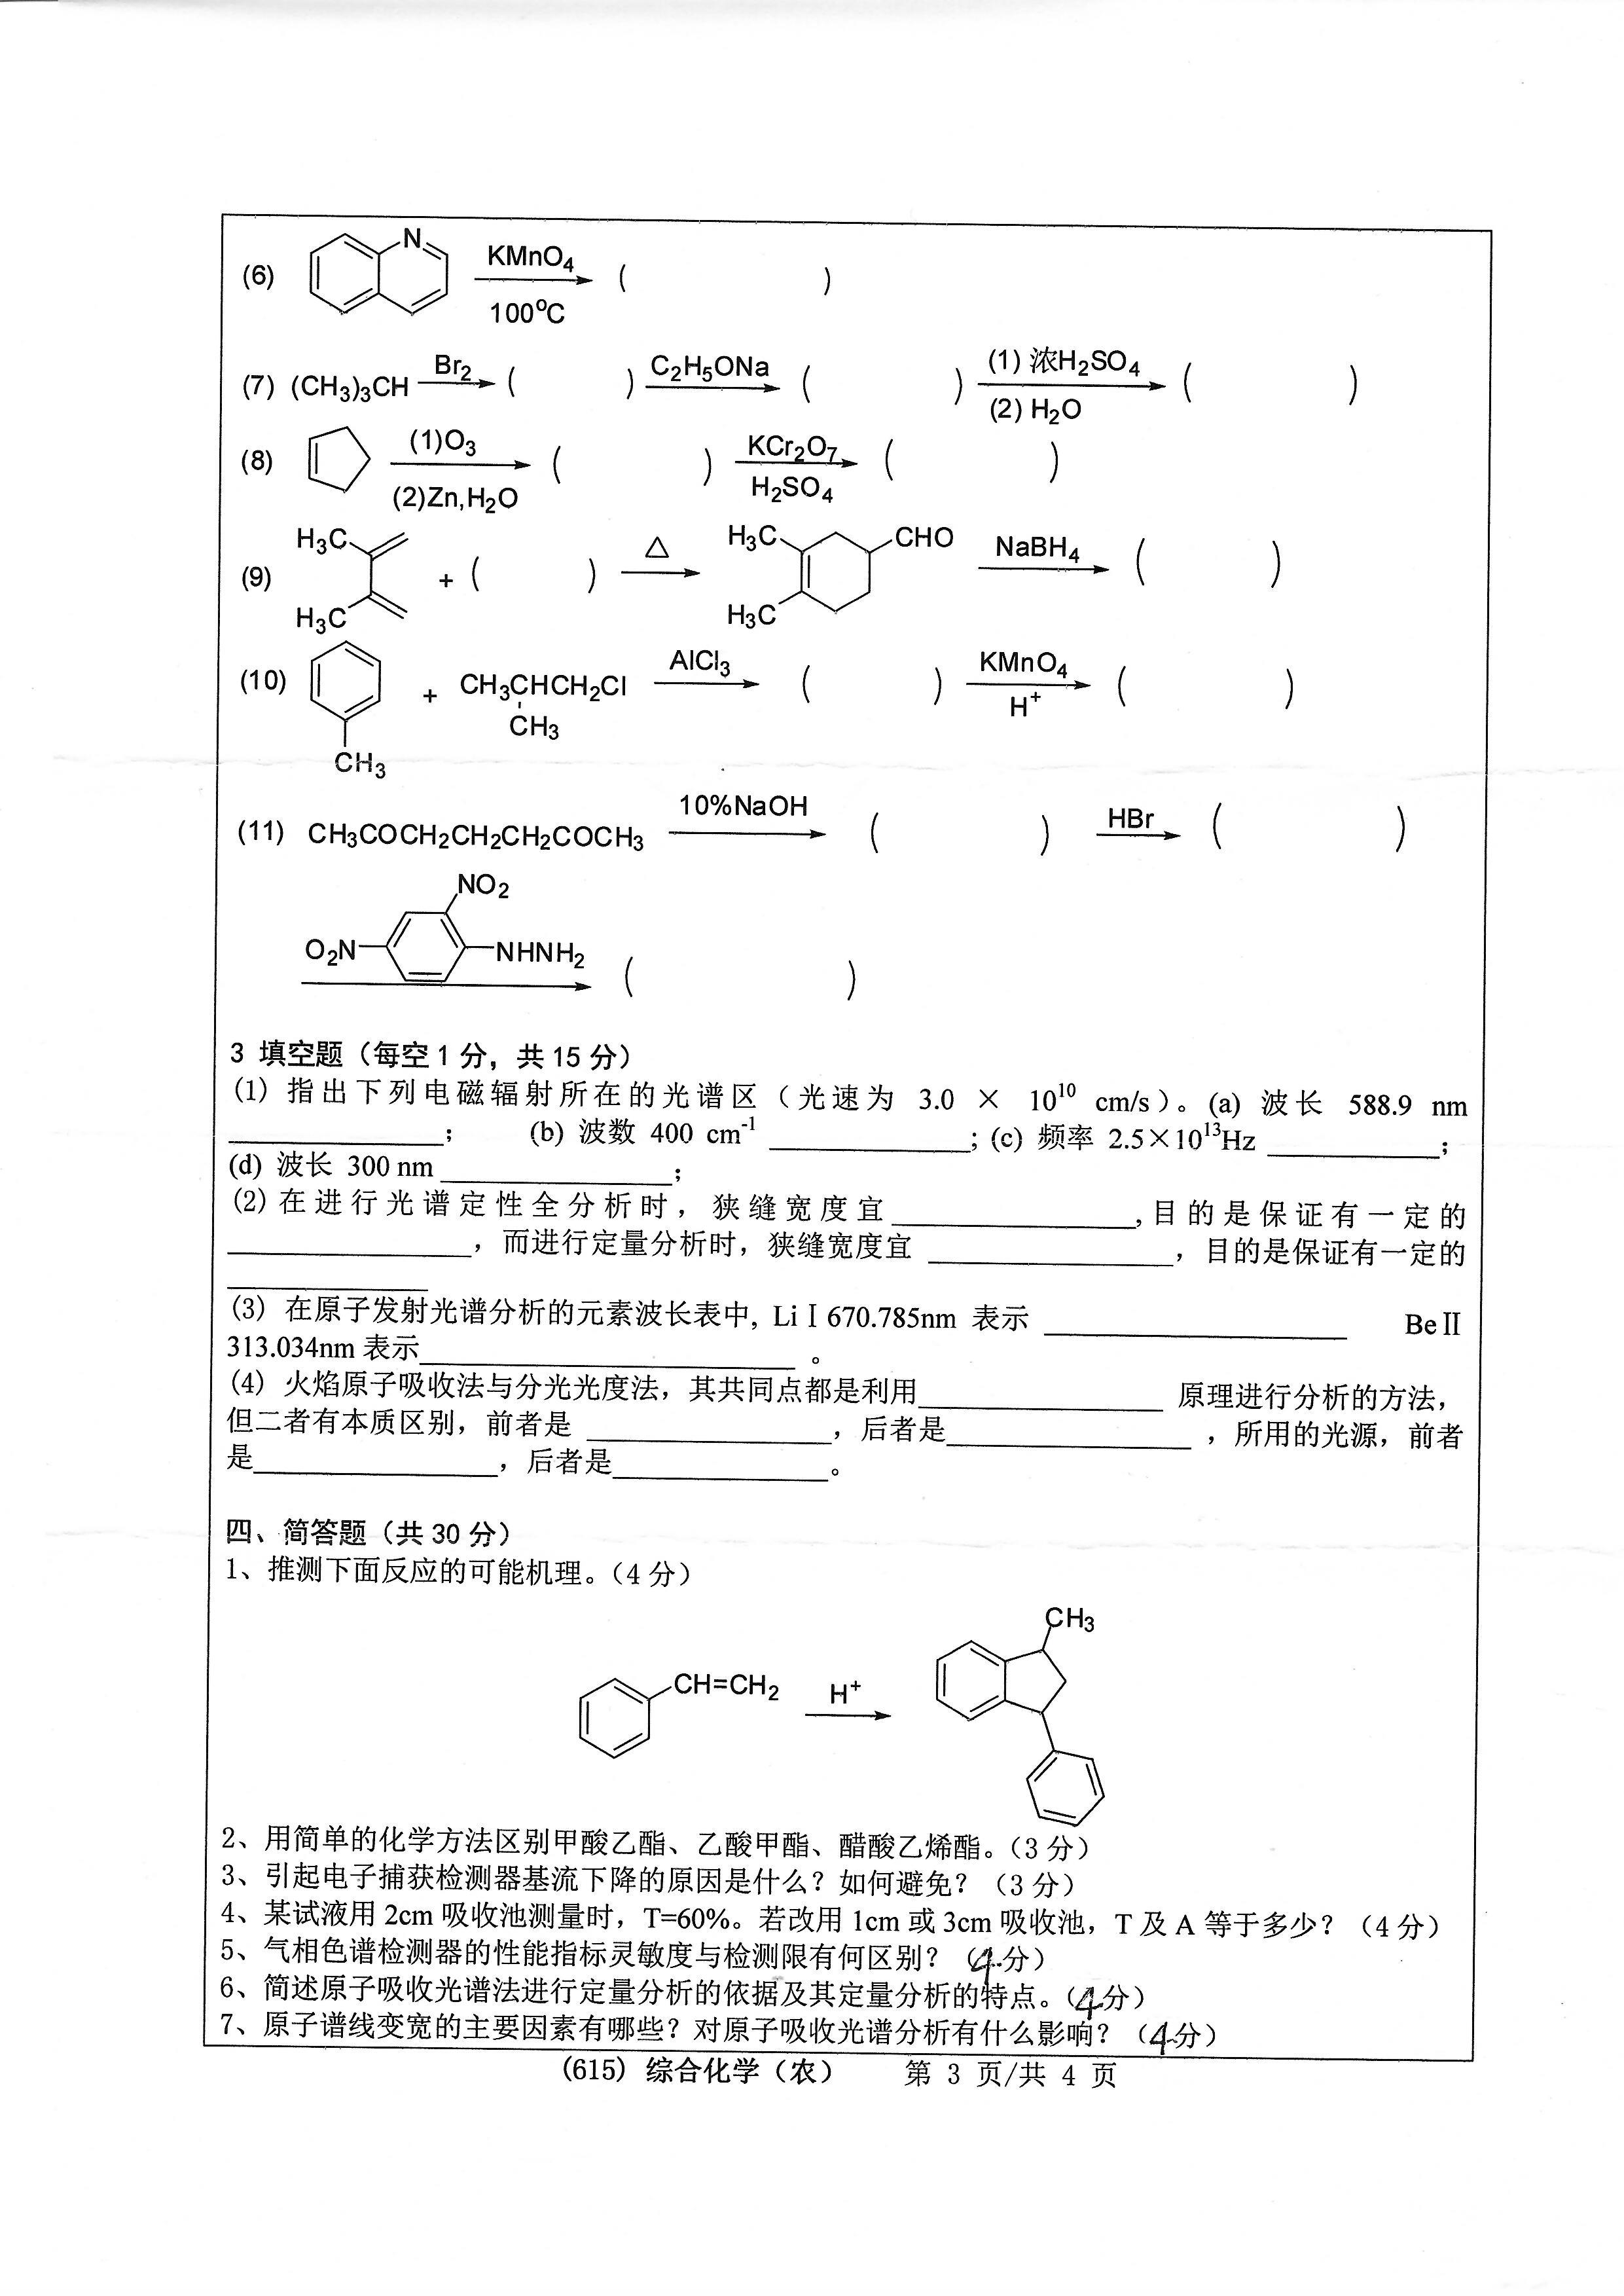 615综合化学（农）2020年考研初试试卷真题（浙江工业大学）